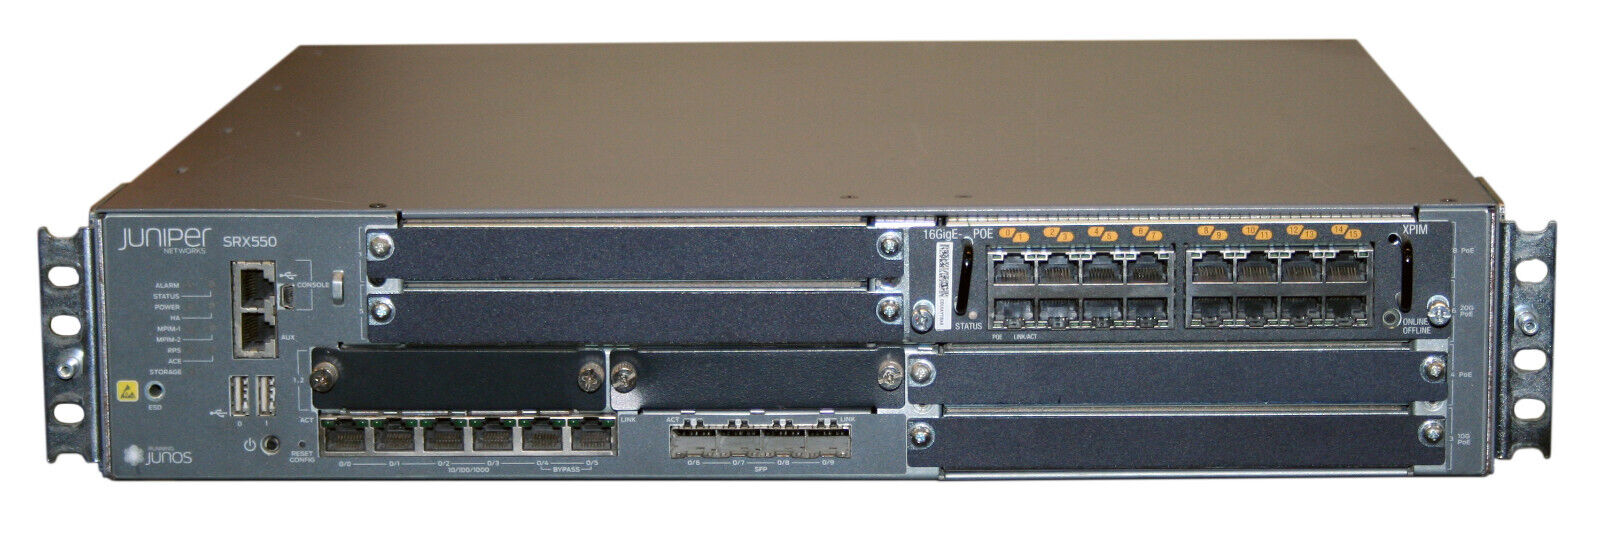 Juniper SRX550 Services Gateway Firewall w/ SRX-GP-16GE-POE, Dual PSU